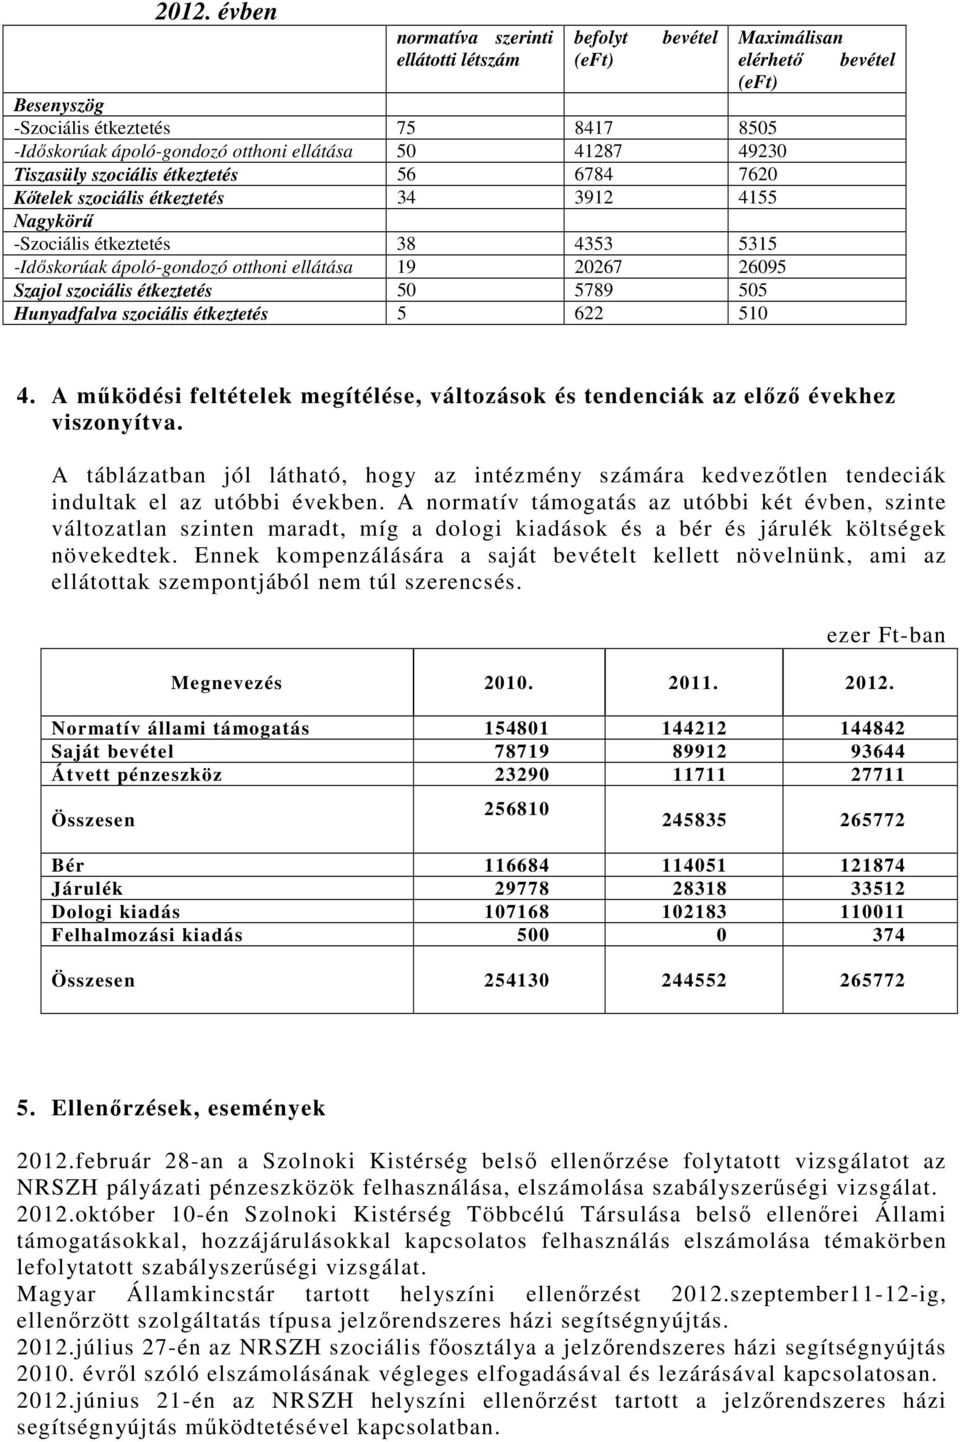 Hunyadfalva szociális étkeztetés 5 622 510 Maximálisan elérhetı bevétel (eft) 4. A mőködési feltételek megítélése, változások és tendenciák az elızı évekhez viszonyítva.